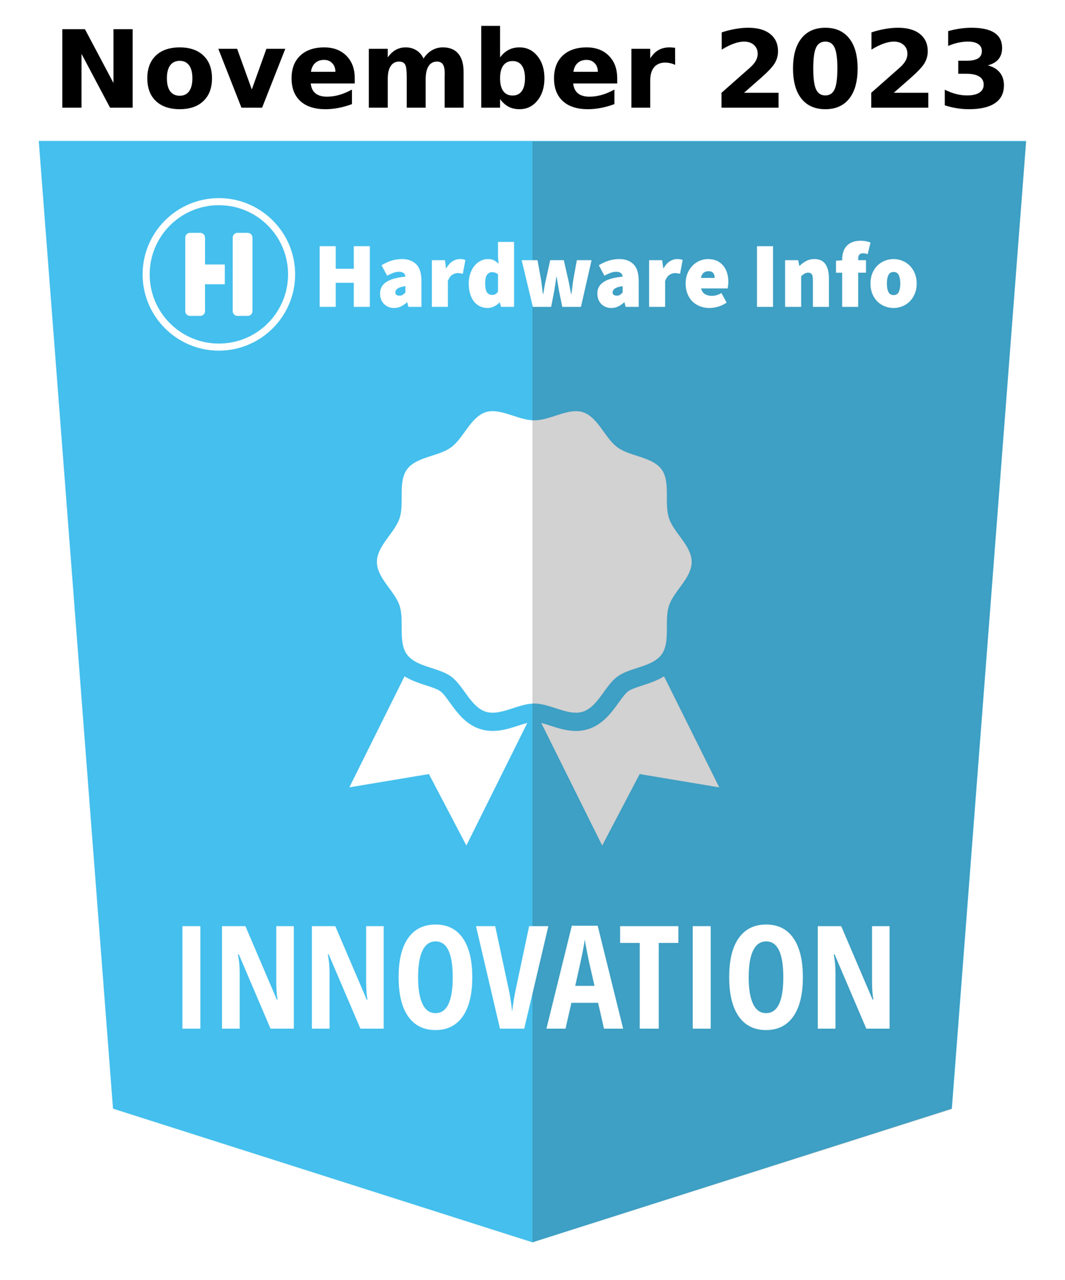 Winnaar van Hardware info Innovation Award November 2023